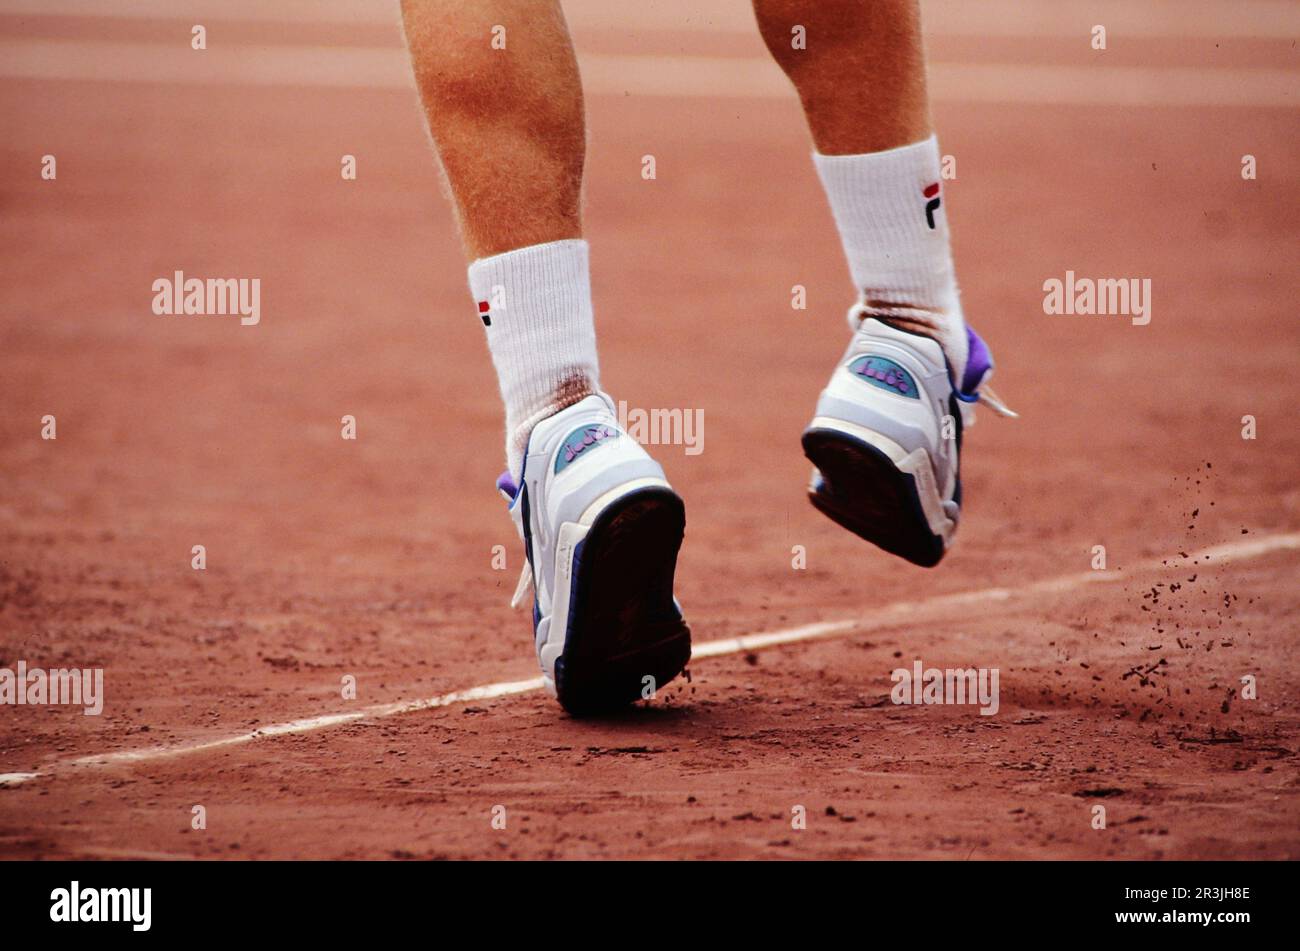 Boris Becker, deutscher Tennisspieler, auf dem Tennisplatz in Aktion Detail  Füße, Beine, Schuhe Stock Photo - Alamy